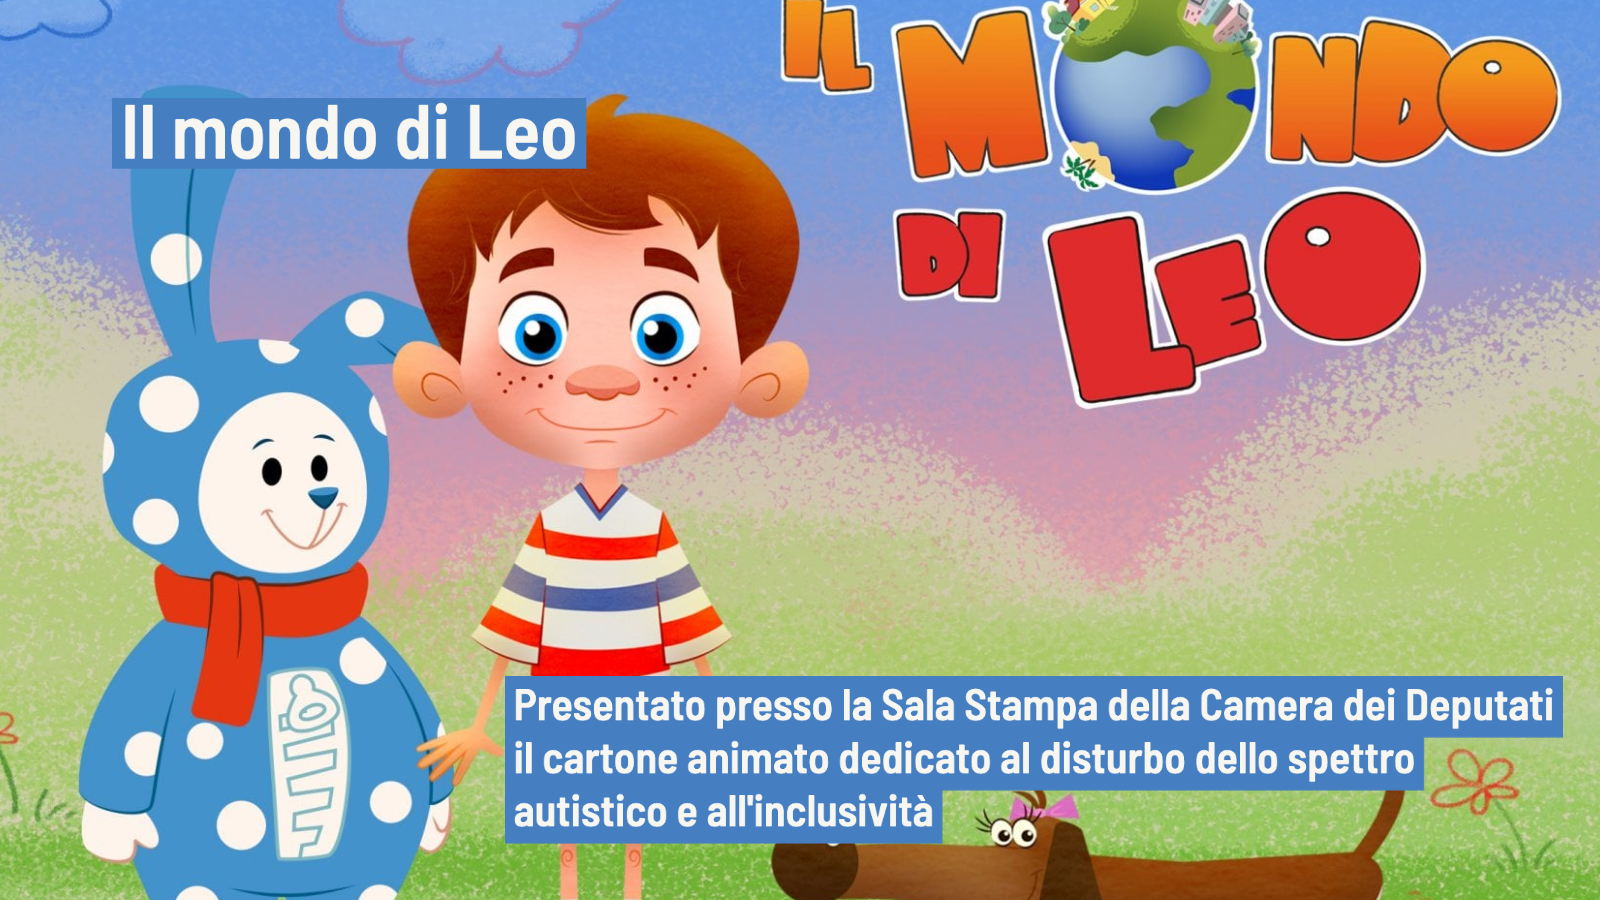 Il mondo di Leo, una serie tv: autismo ed inclusione - Comunicato stampa